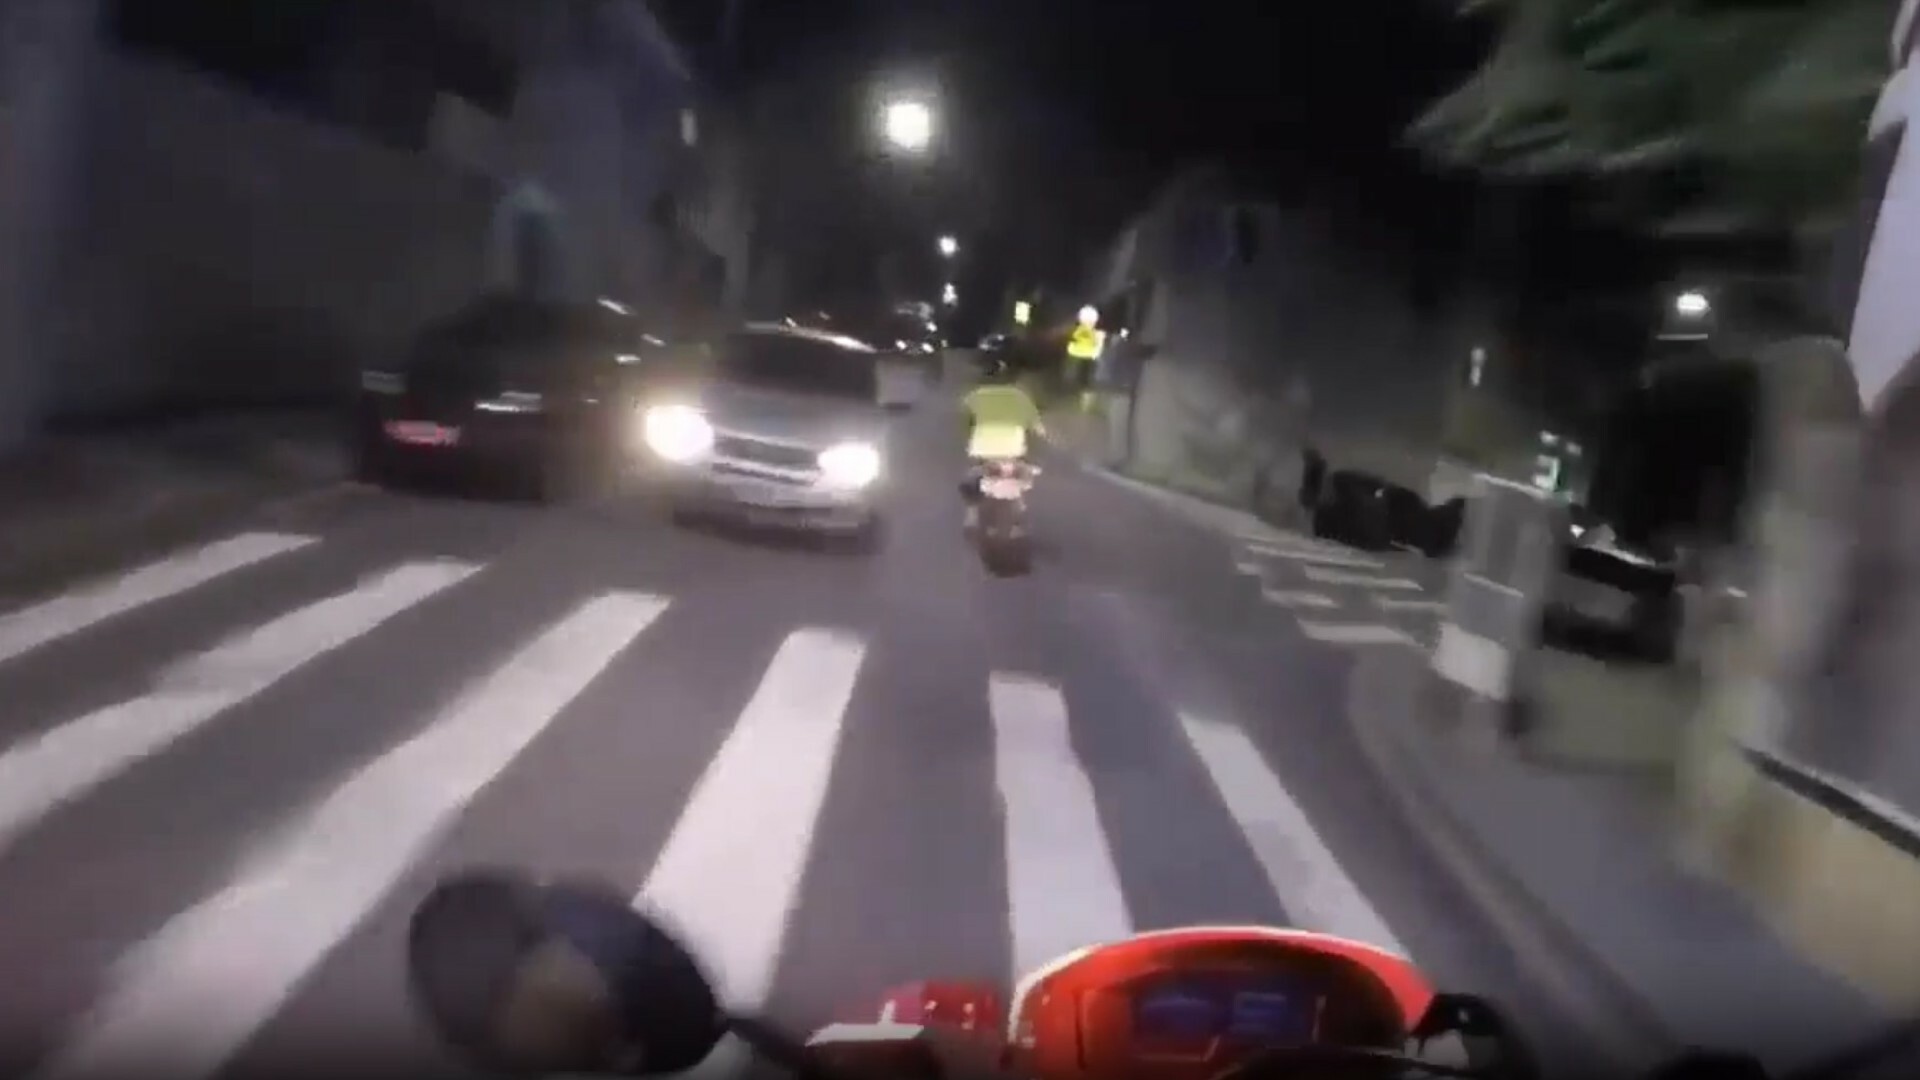 Aperte o cinto para uma emocionante perseguição policial de motocicleta de 7 minutos no Brasil